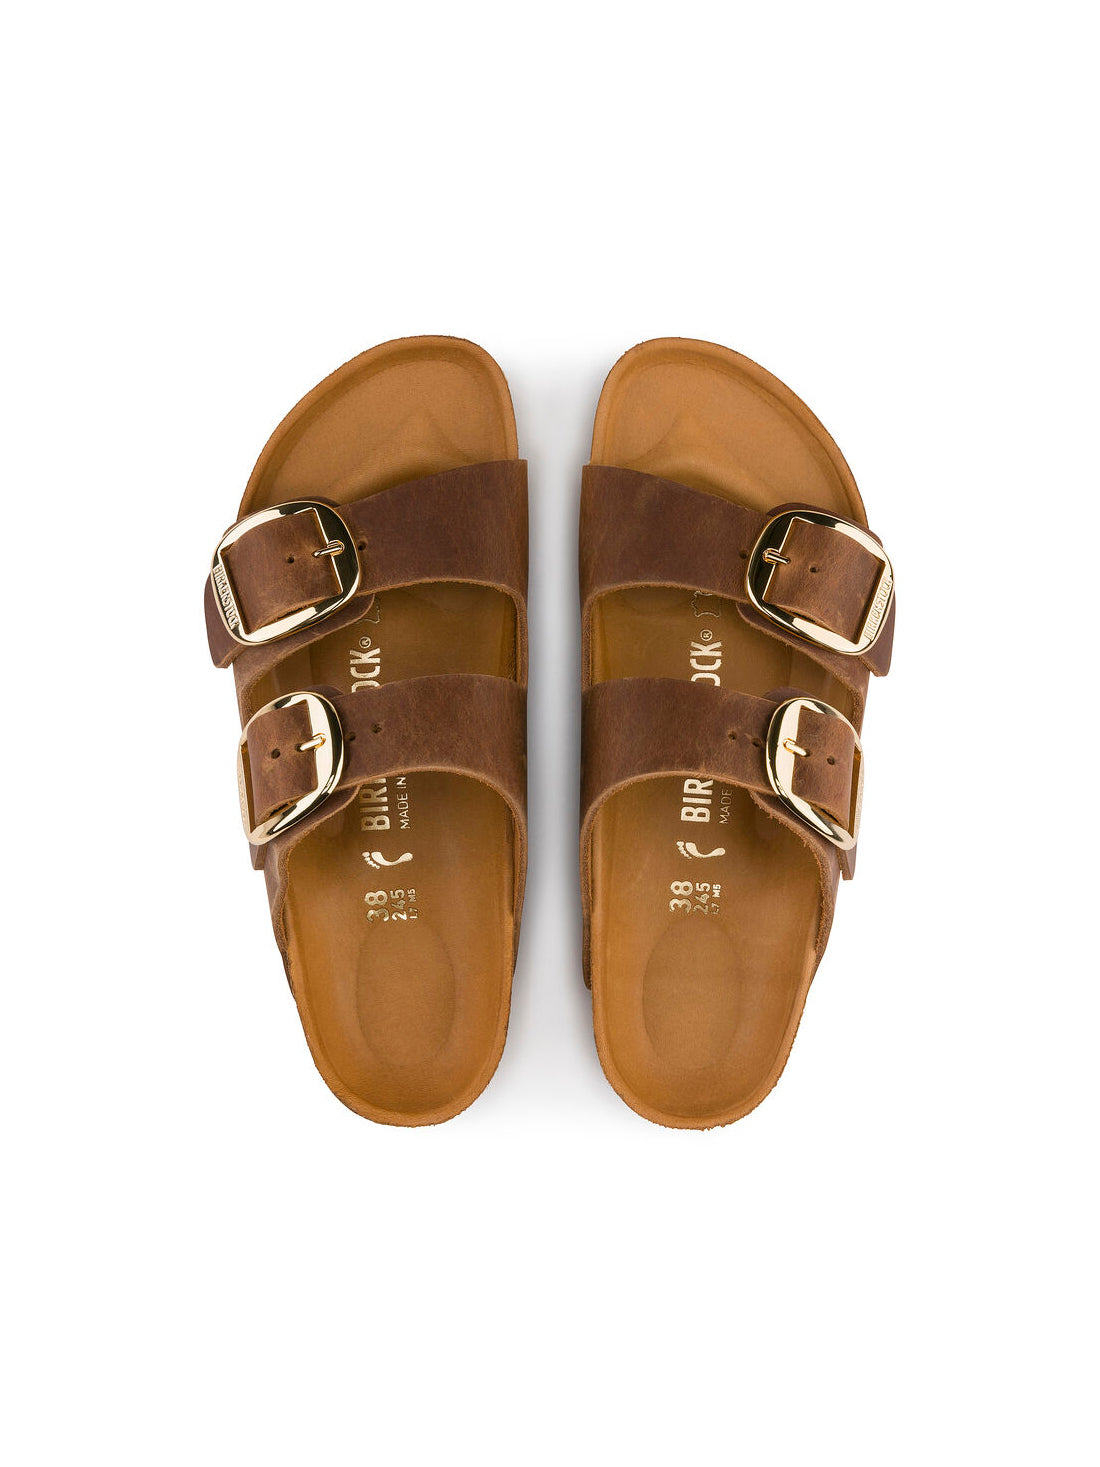 birkenstock arizona big buckle sandals in oiled leather cognac regular